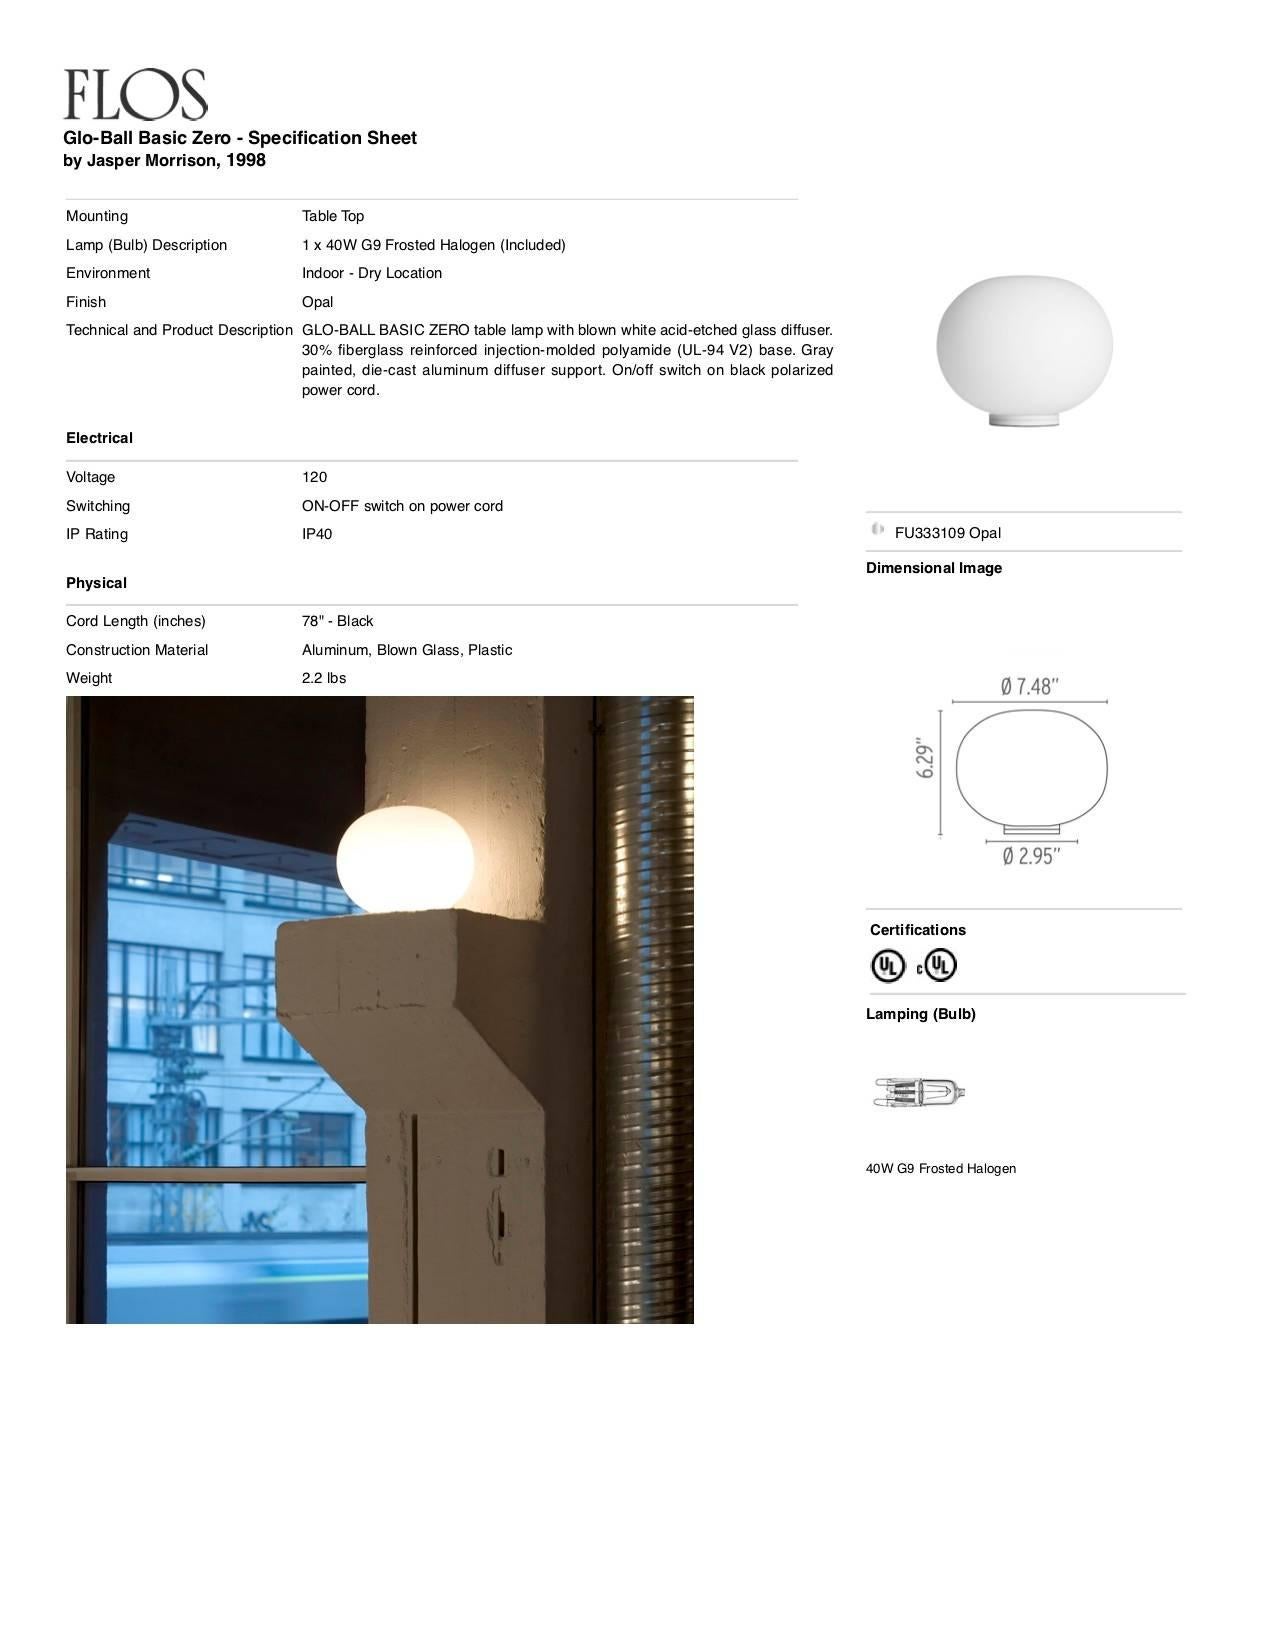 Italian Jasper Morrison Modern Minimalist Glo-Ball Glass Desk Lamp for FLOS, in stock For Sale